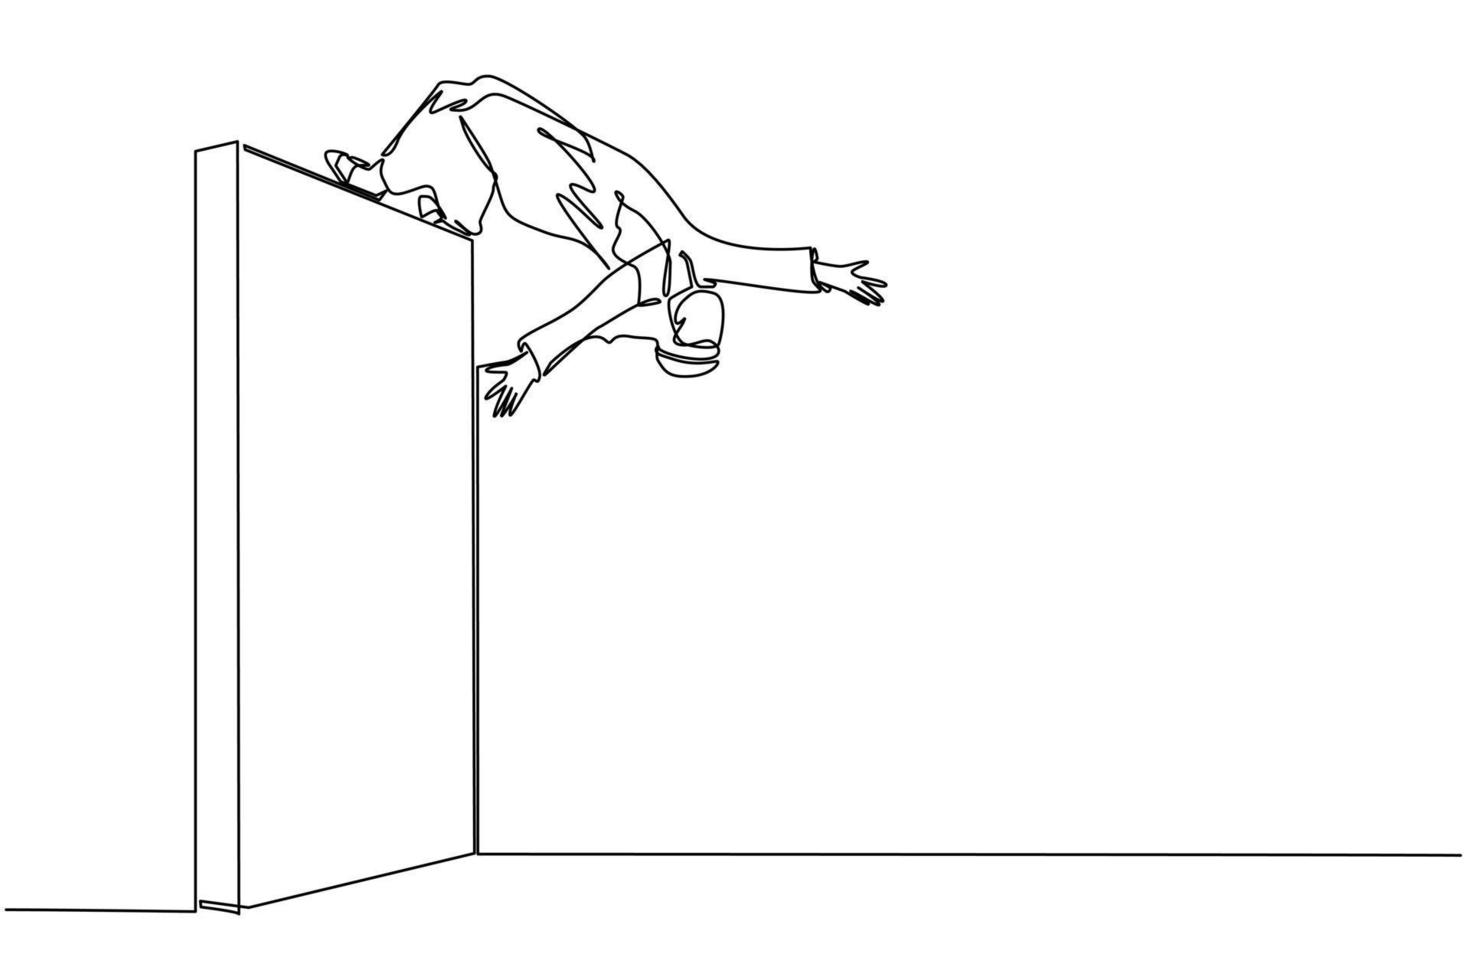 fortlaufende einzeilige zeichnung arabischer geschäftsmann, der mit akrobatischem überkopfstil über die mauer springt, um sein ziel zu erreichen. geschäftsmann, der über die wand von barrieren springt. einzeiliger Entwurfsvektor vektor